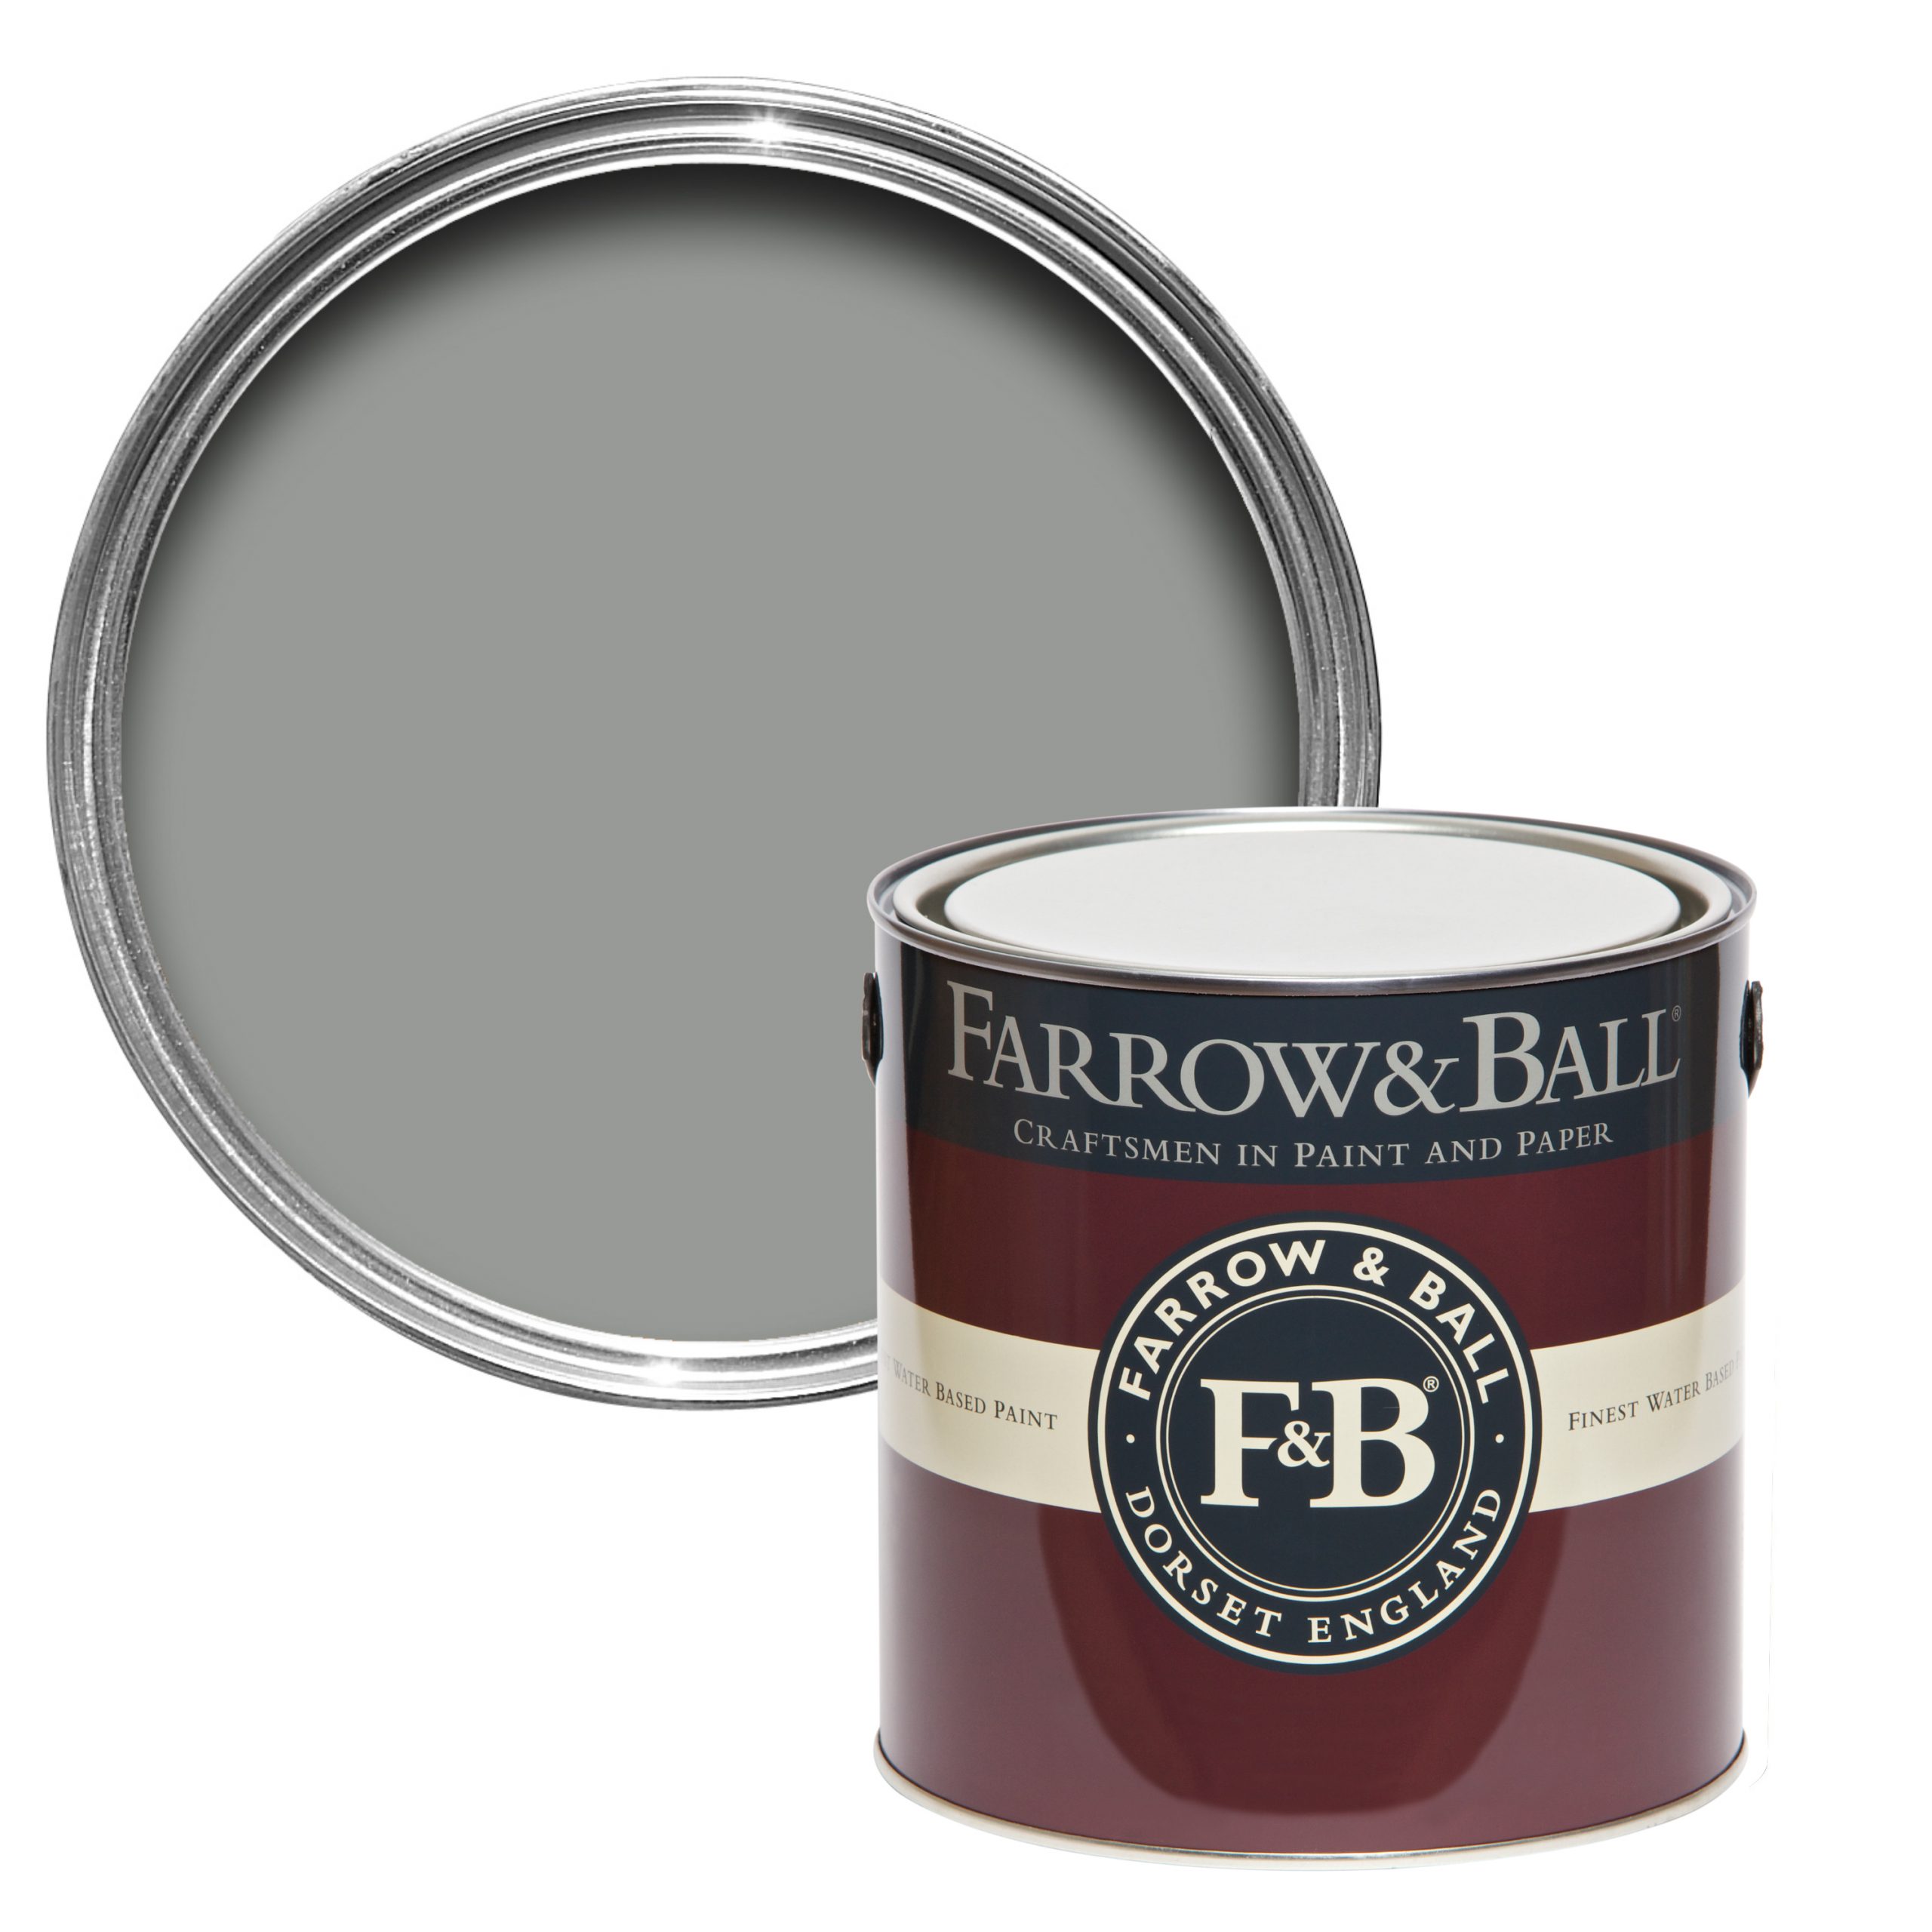 Vopsea gri lucioasa 95% luciu pentru interior exterior Farrow & Ball Full Gloss Manor House Gray No. 265 2.5 Litri